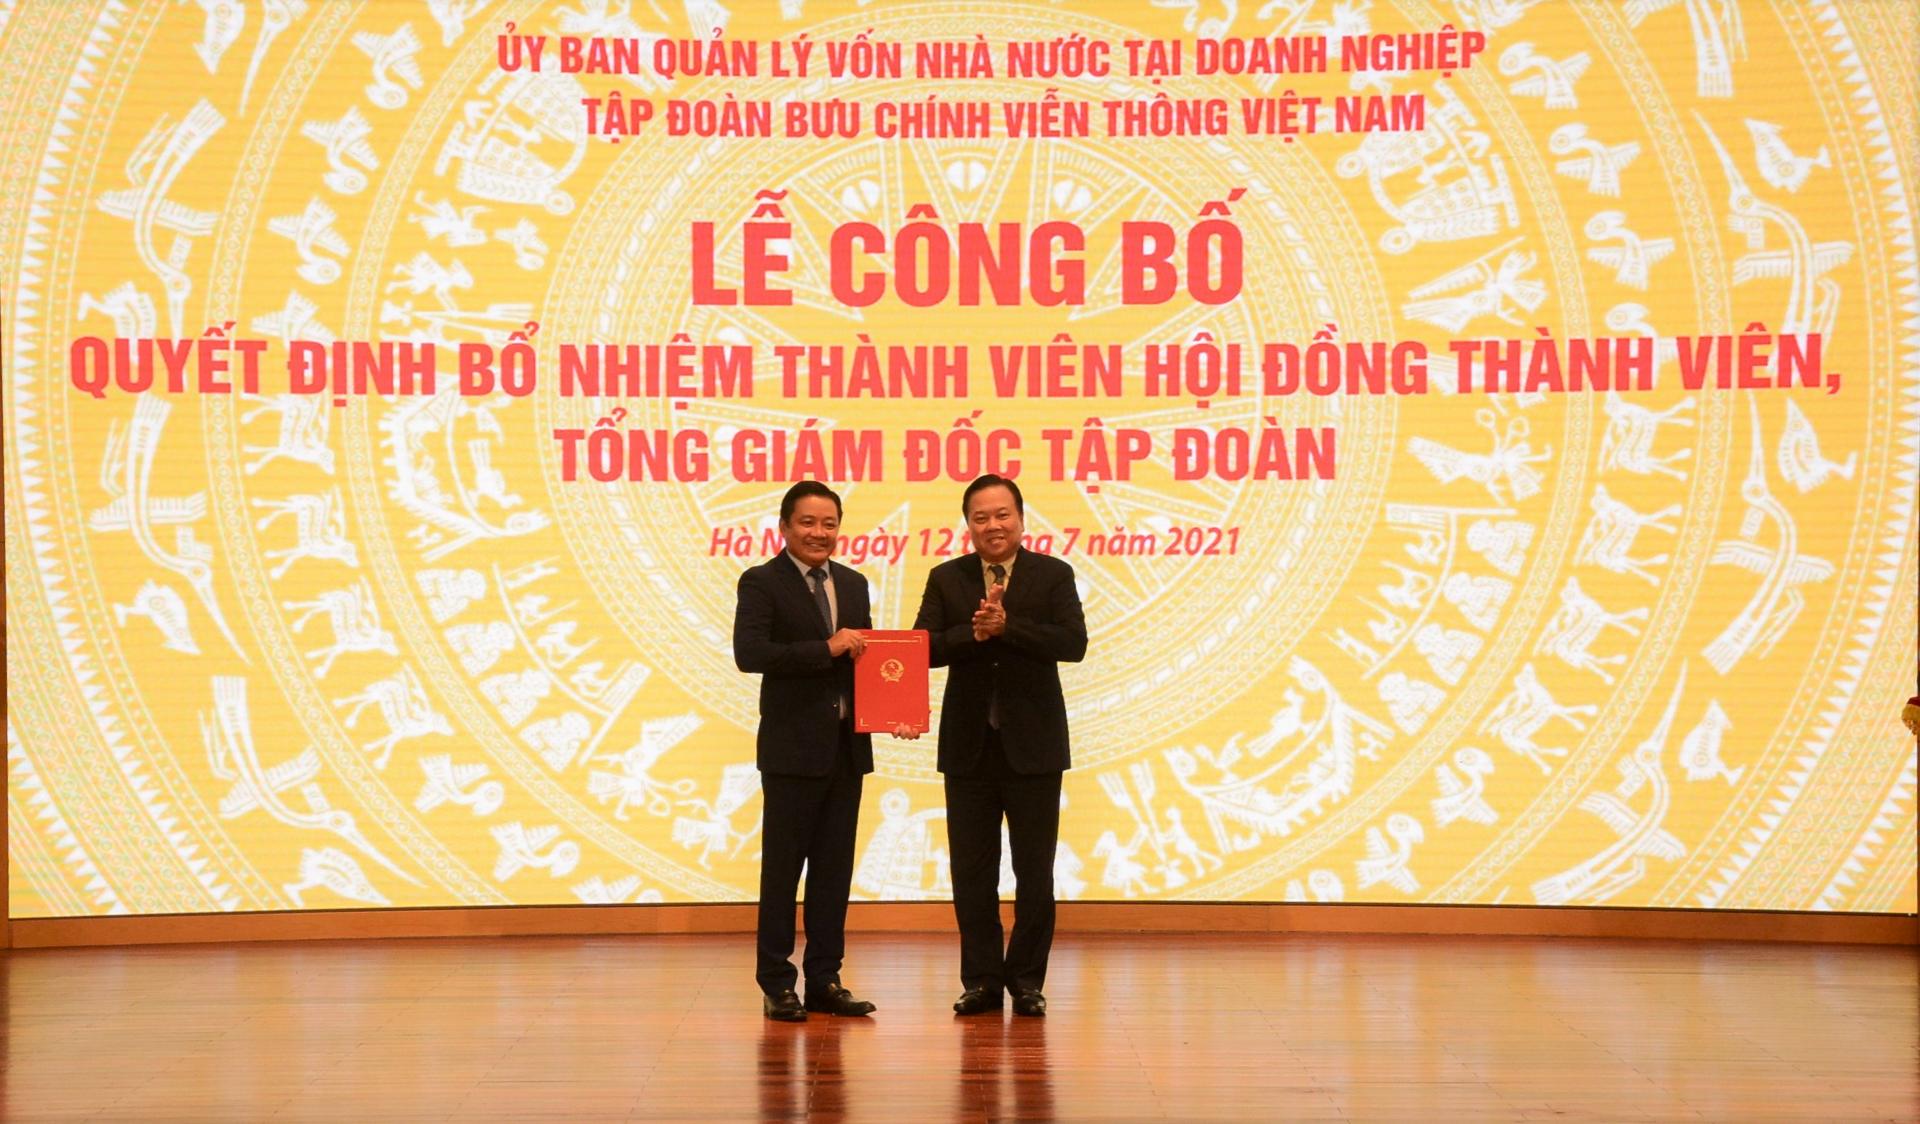 Chủ tịch Ủy ban QLVNN tại doanh nghiệp Nguyễn Hoàng Anh trao quyết định bổ nhiệm ông Huỳnh Quang Liêm giữ chức vụ Thành viên HTĐV Tập đoàn VNPT